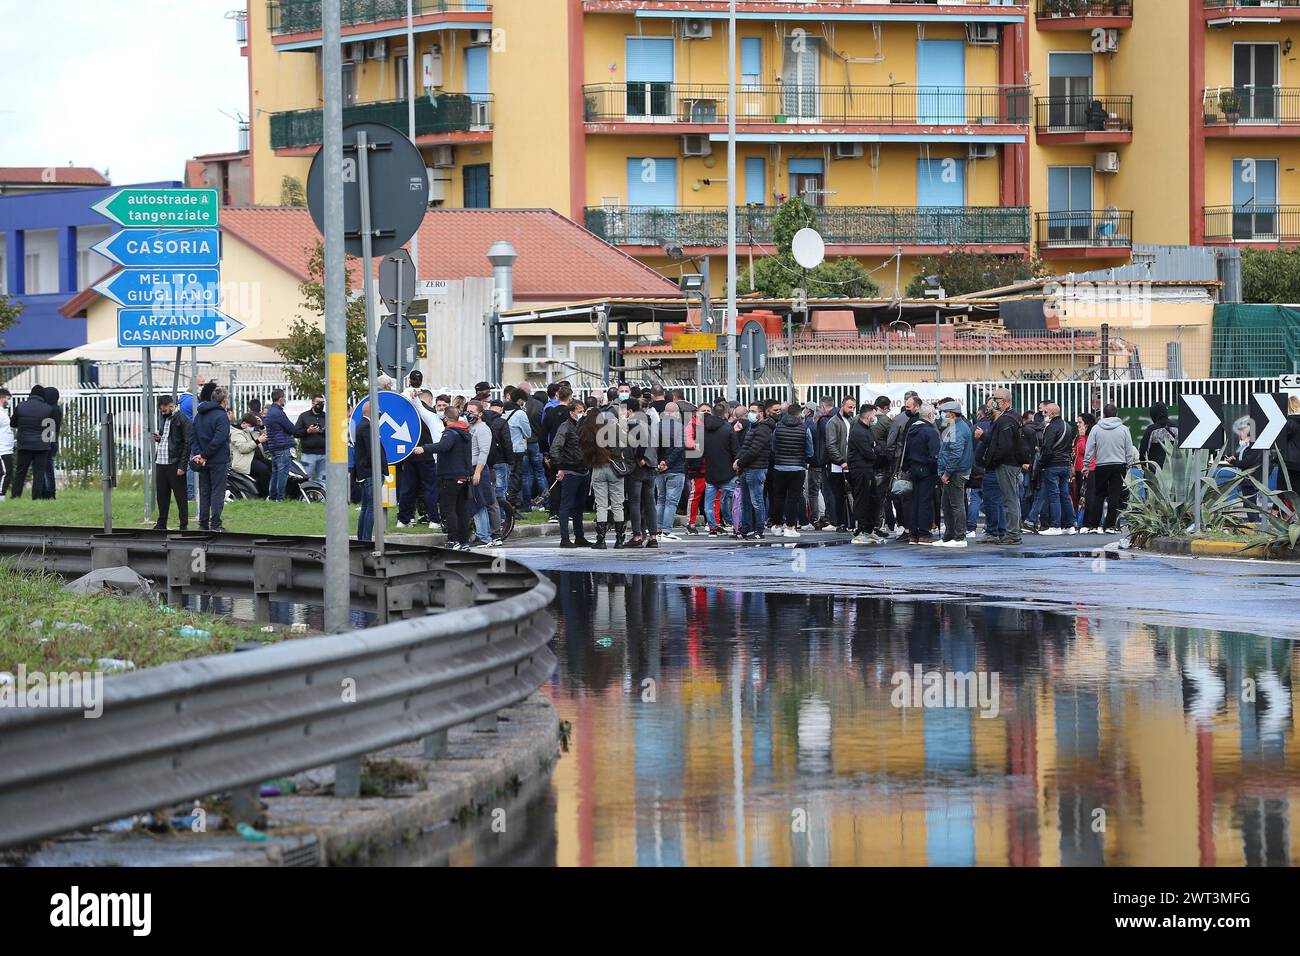 Un grupo de personas bloquea automóviles a lo largo de las vías de acceso de la ciudad de Arzano, para protestar por el cierre y cierre de tiendas, tomadas por las autoridades locales, a Foto de stock